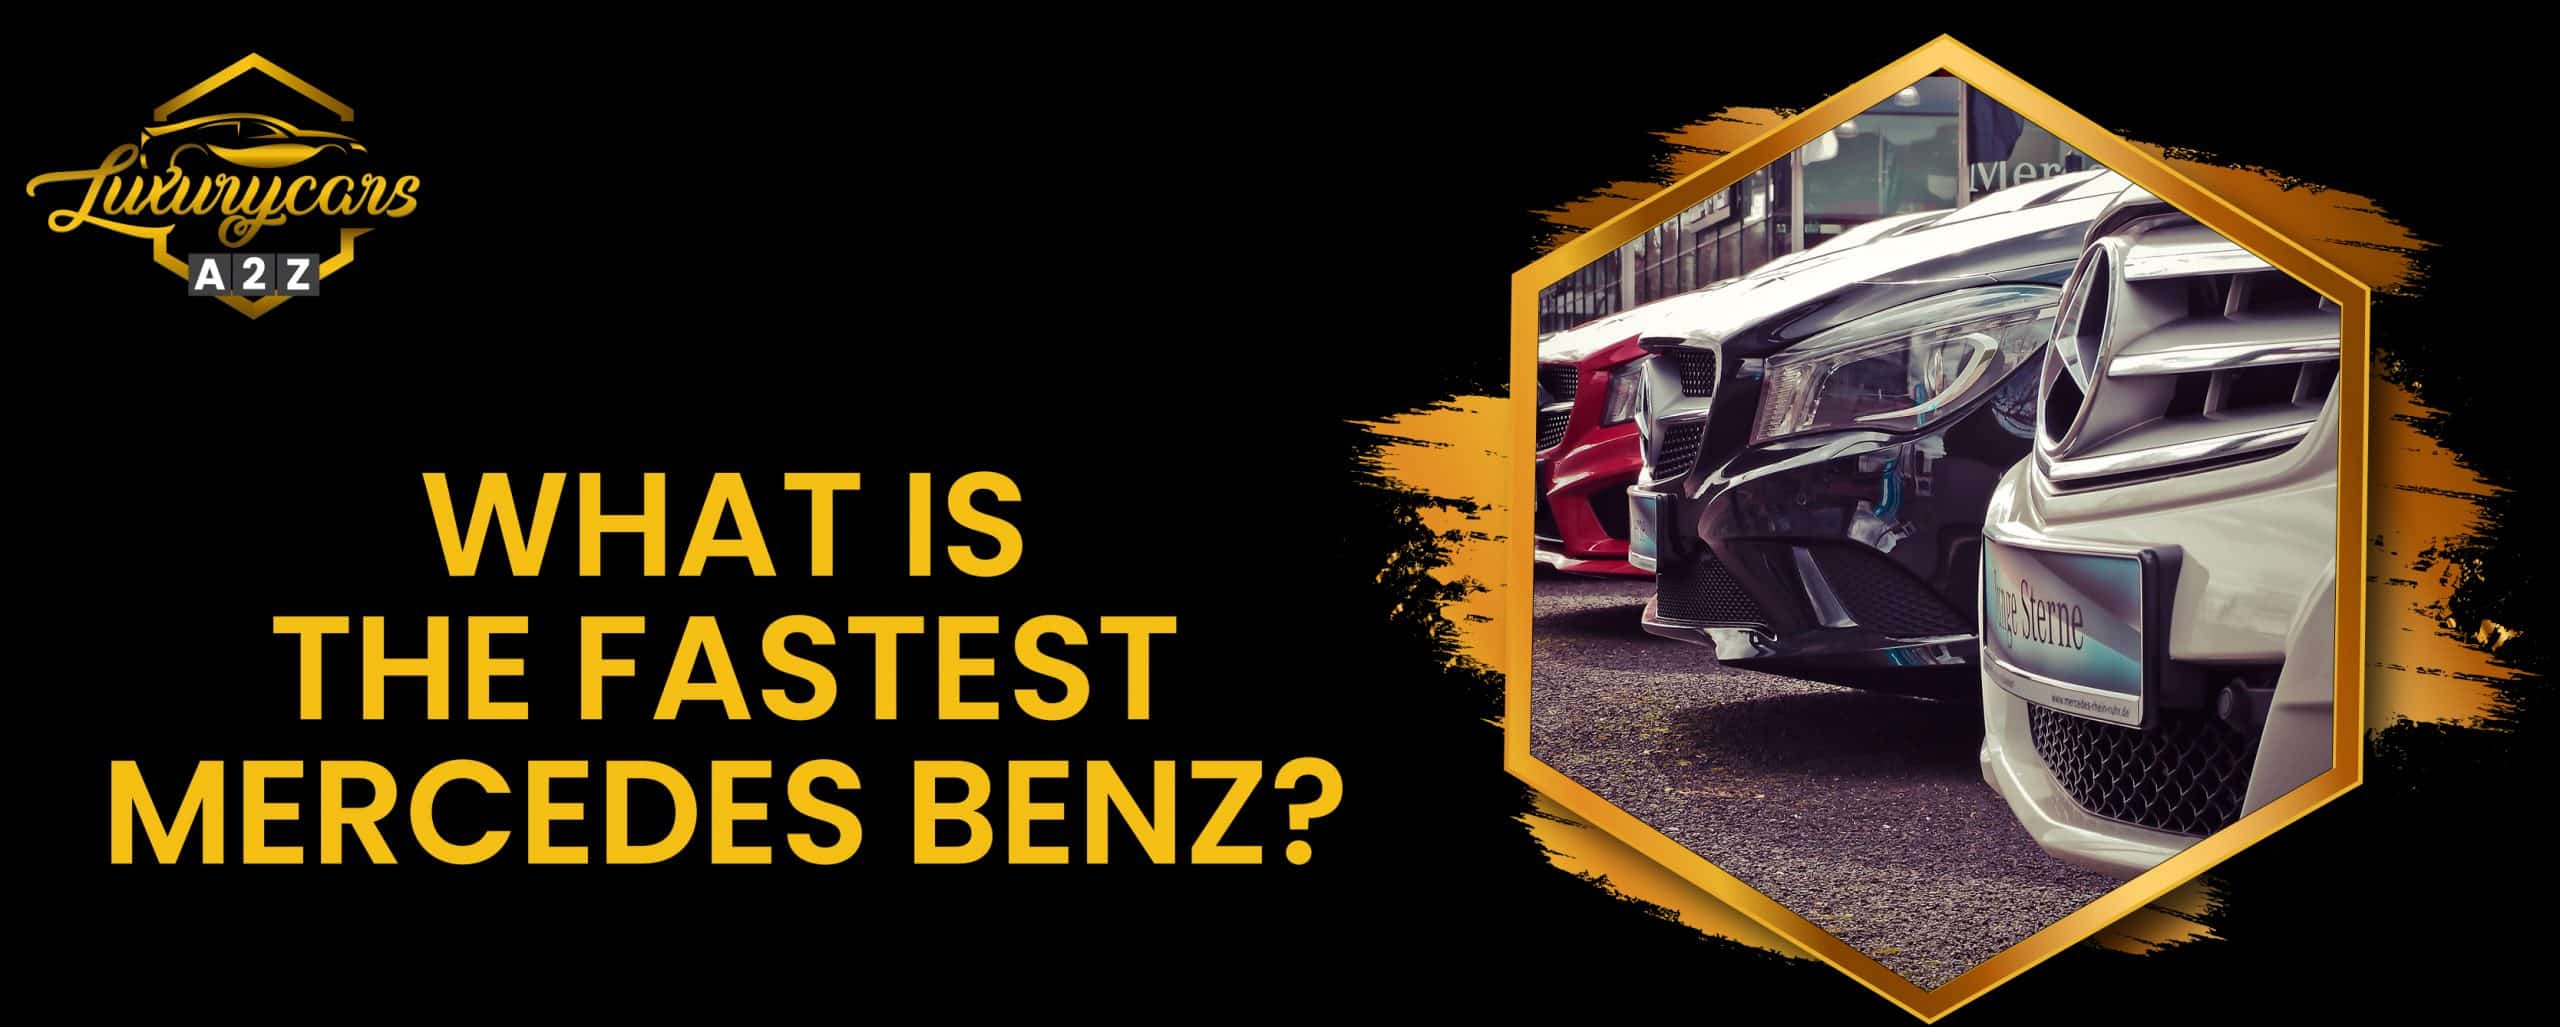 Quelle est la Mercedes Benz la plus rapide ?